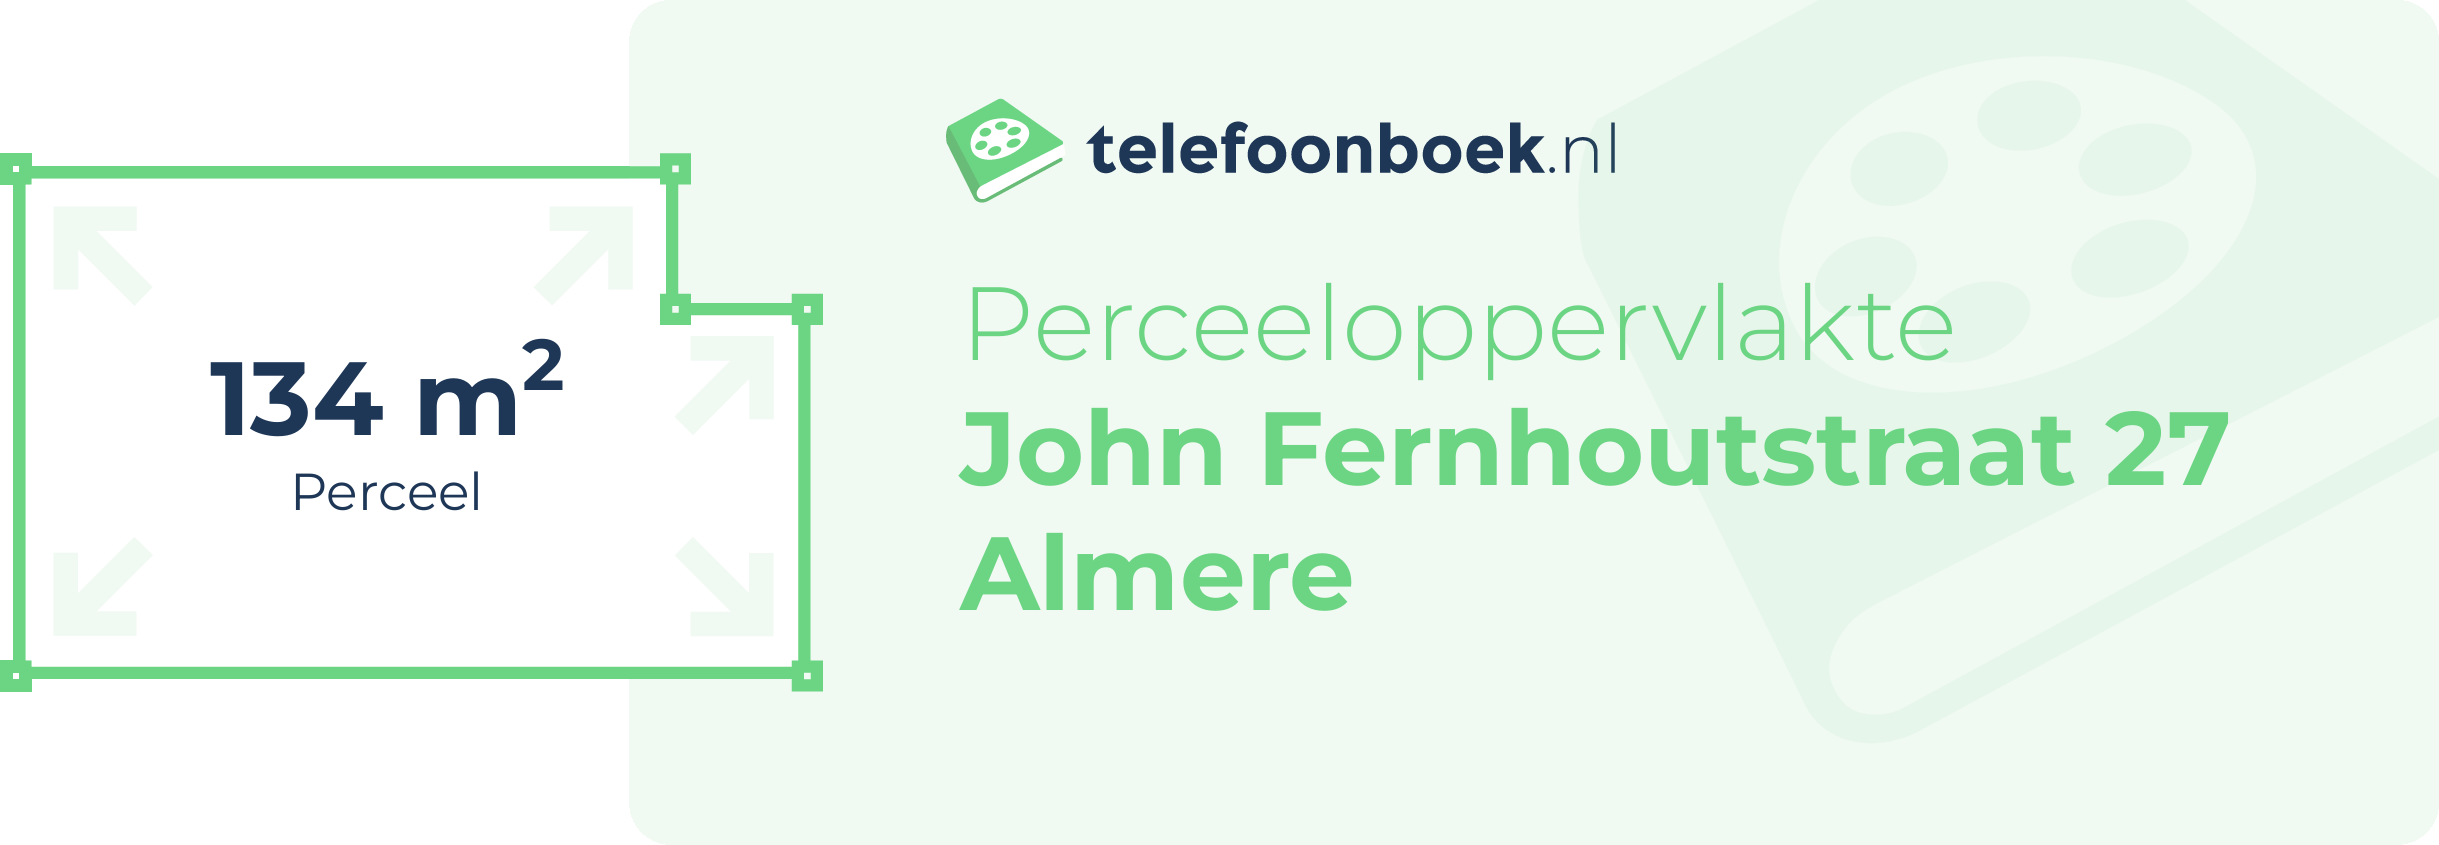 Perceeloppervlakte John Fernhoutstraat 27 Almere